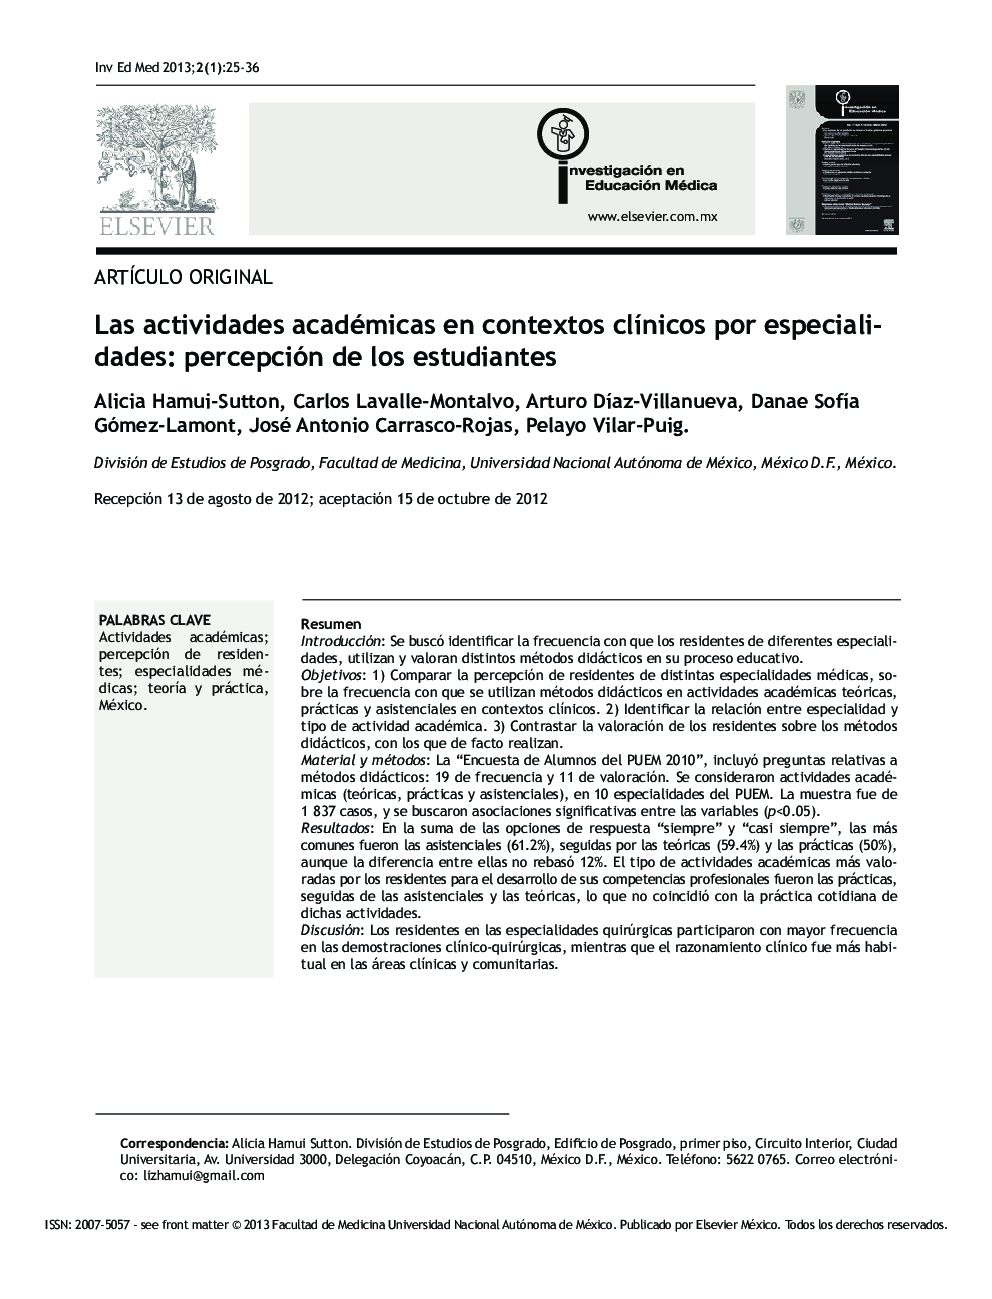 Las actividades académicas en contextos clínicos por especialidades: percepción de los estudiantes